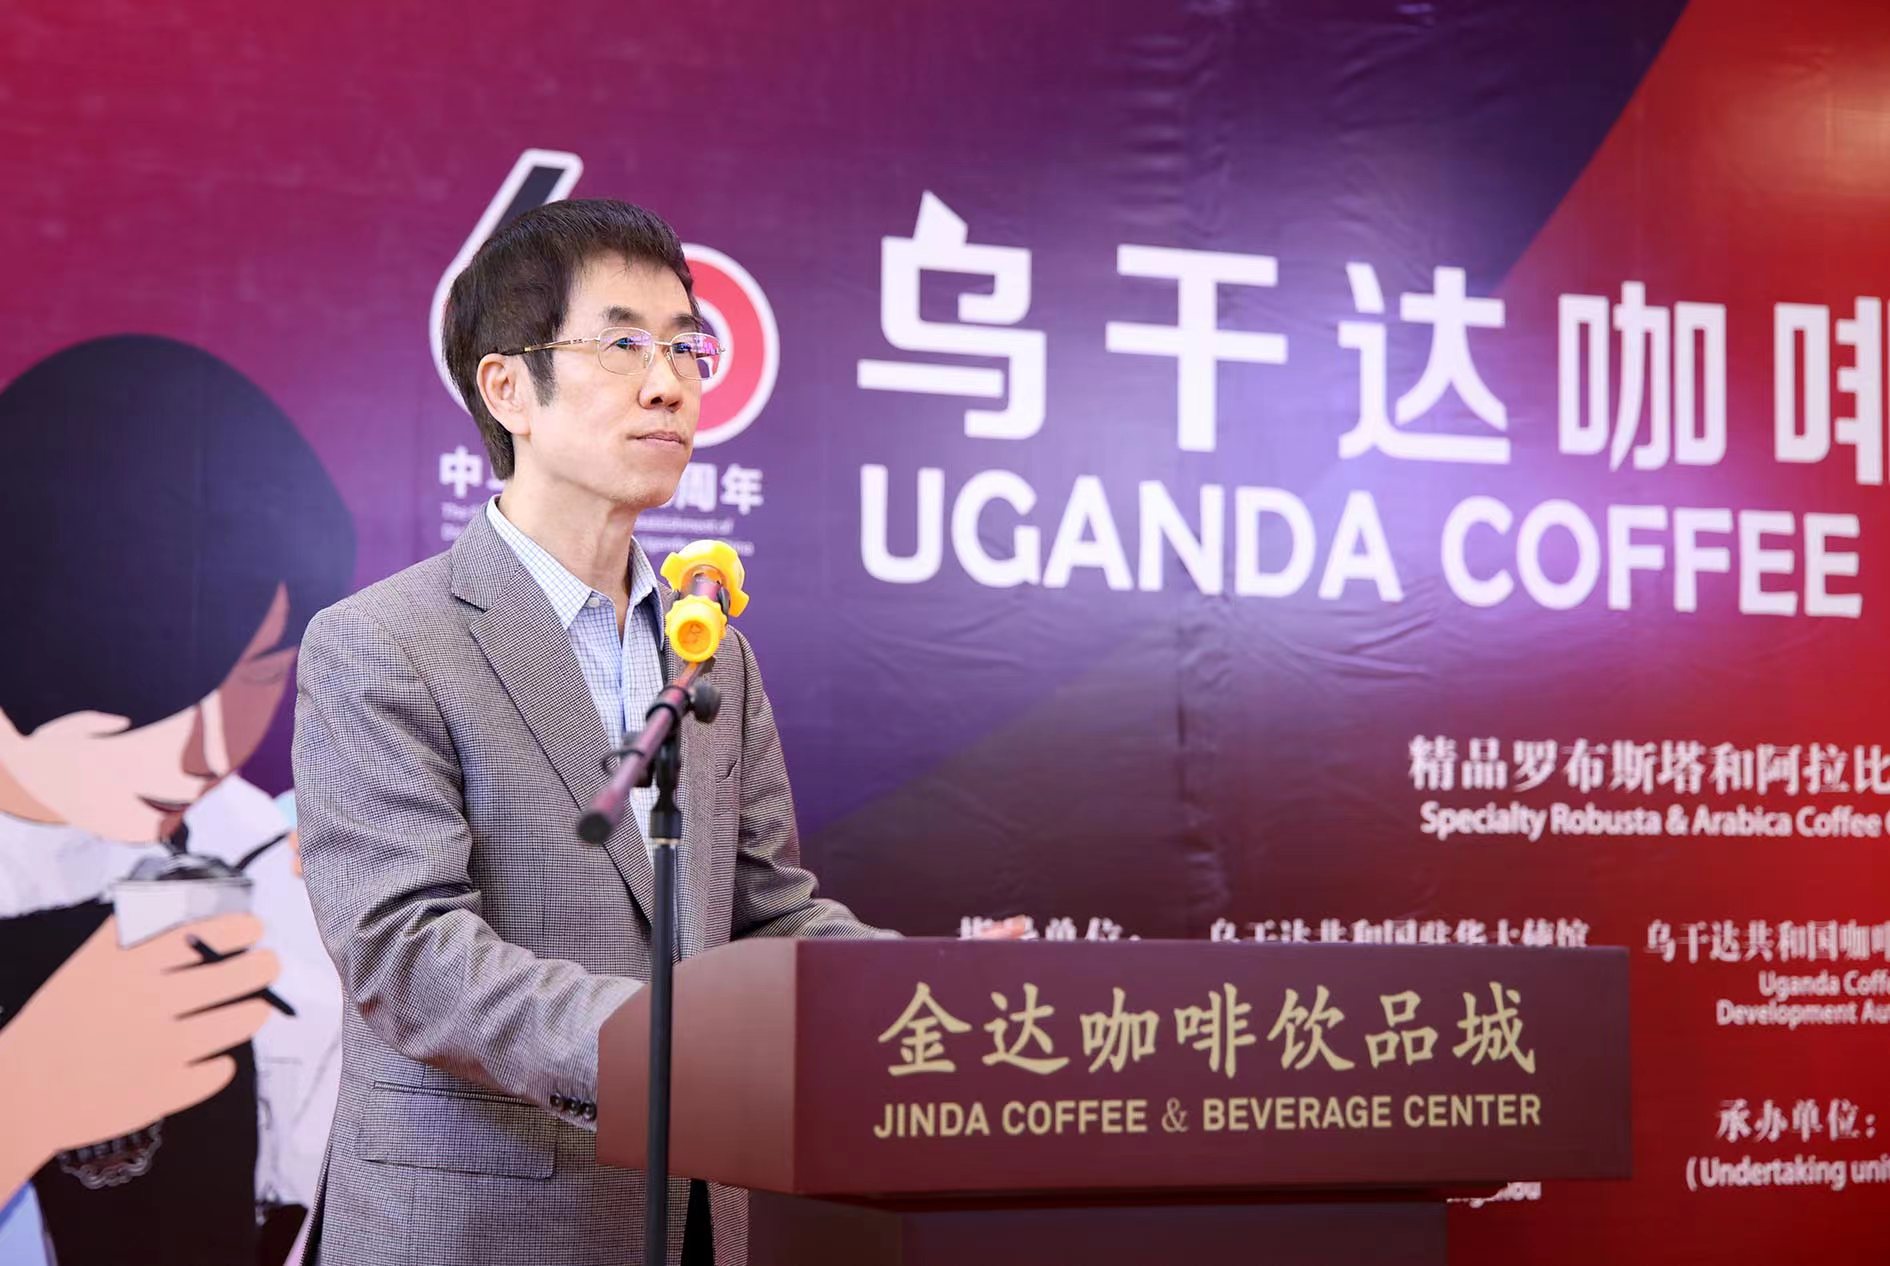 國內多家國家級媒體中國質量新聞網、企業觀察網、鳳凰網、中國網、財經等連續報道烏干達咖啡“牽手”廣州金達咖啡飲品城謀求在華新機會